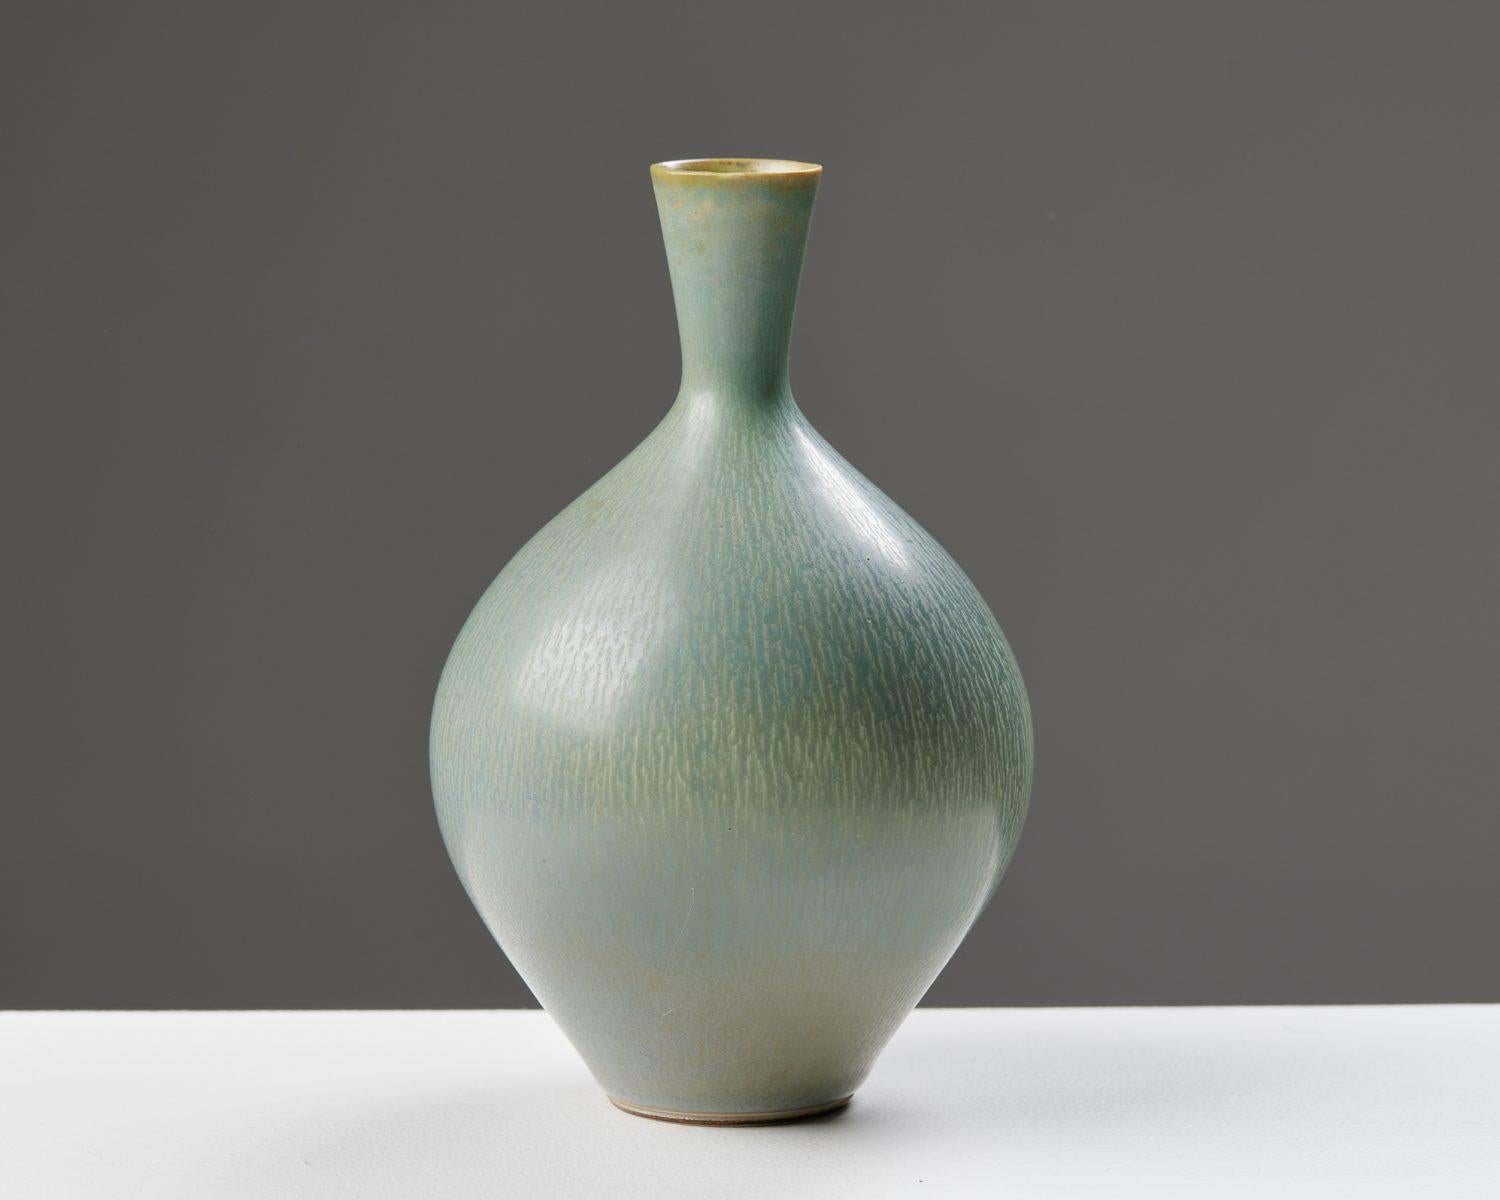 Vase conçu par Berndt Friberg pour Gustavsberg, 
Suède. 1955.

Grès.

Signé.

Dimensions :
H : 14 cm / 5 1/2